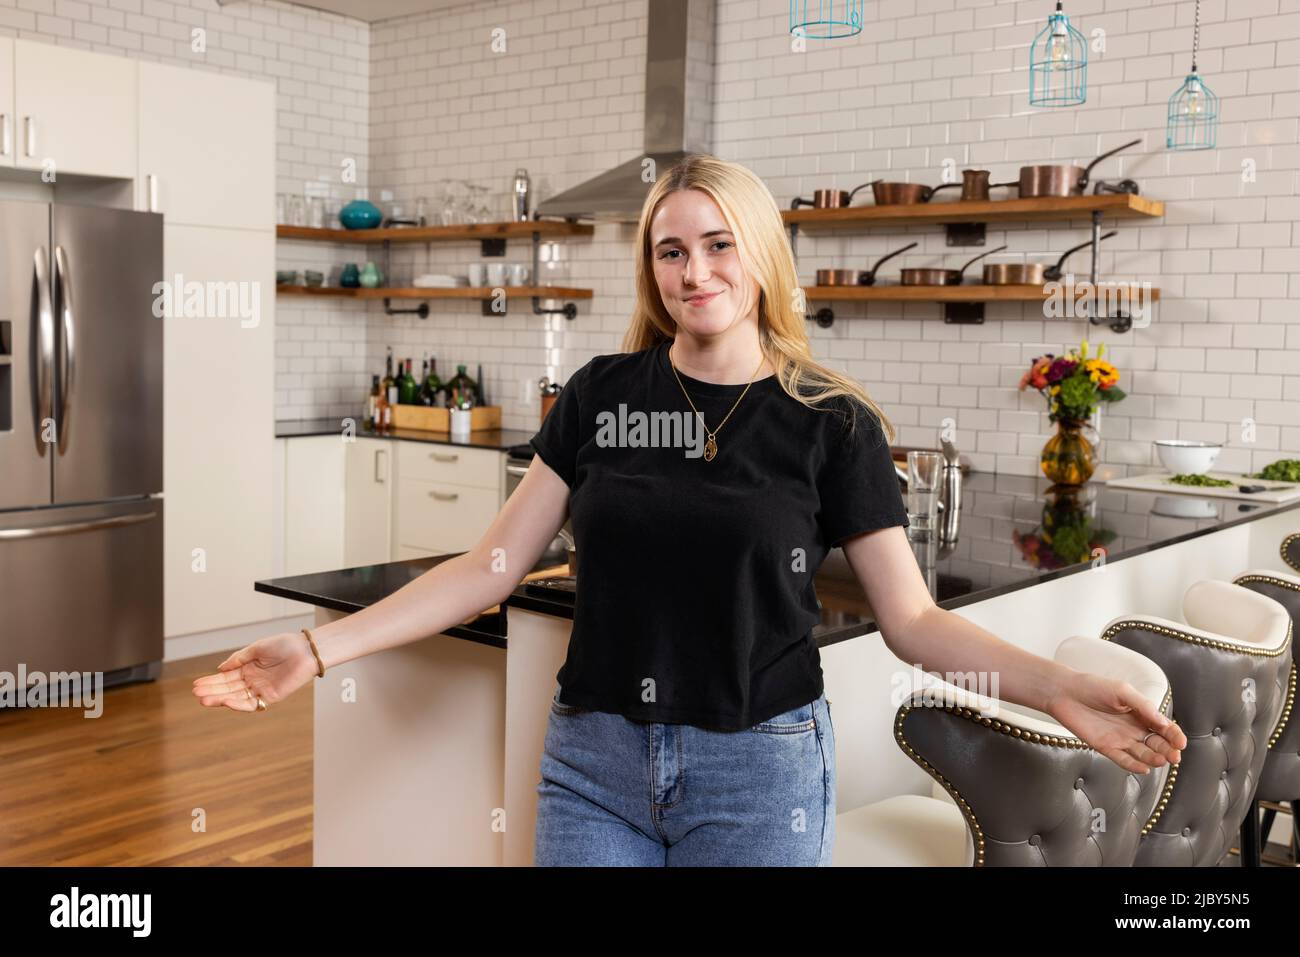 Porträt einer jungen Frau, die in ihrer Küche steht und ihre Arme mit einem einladenden Ausdruck in die Kamera blickt. Stockfoto